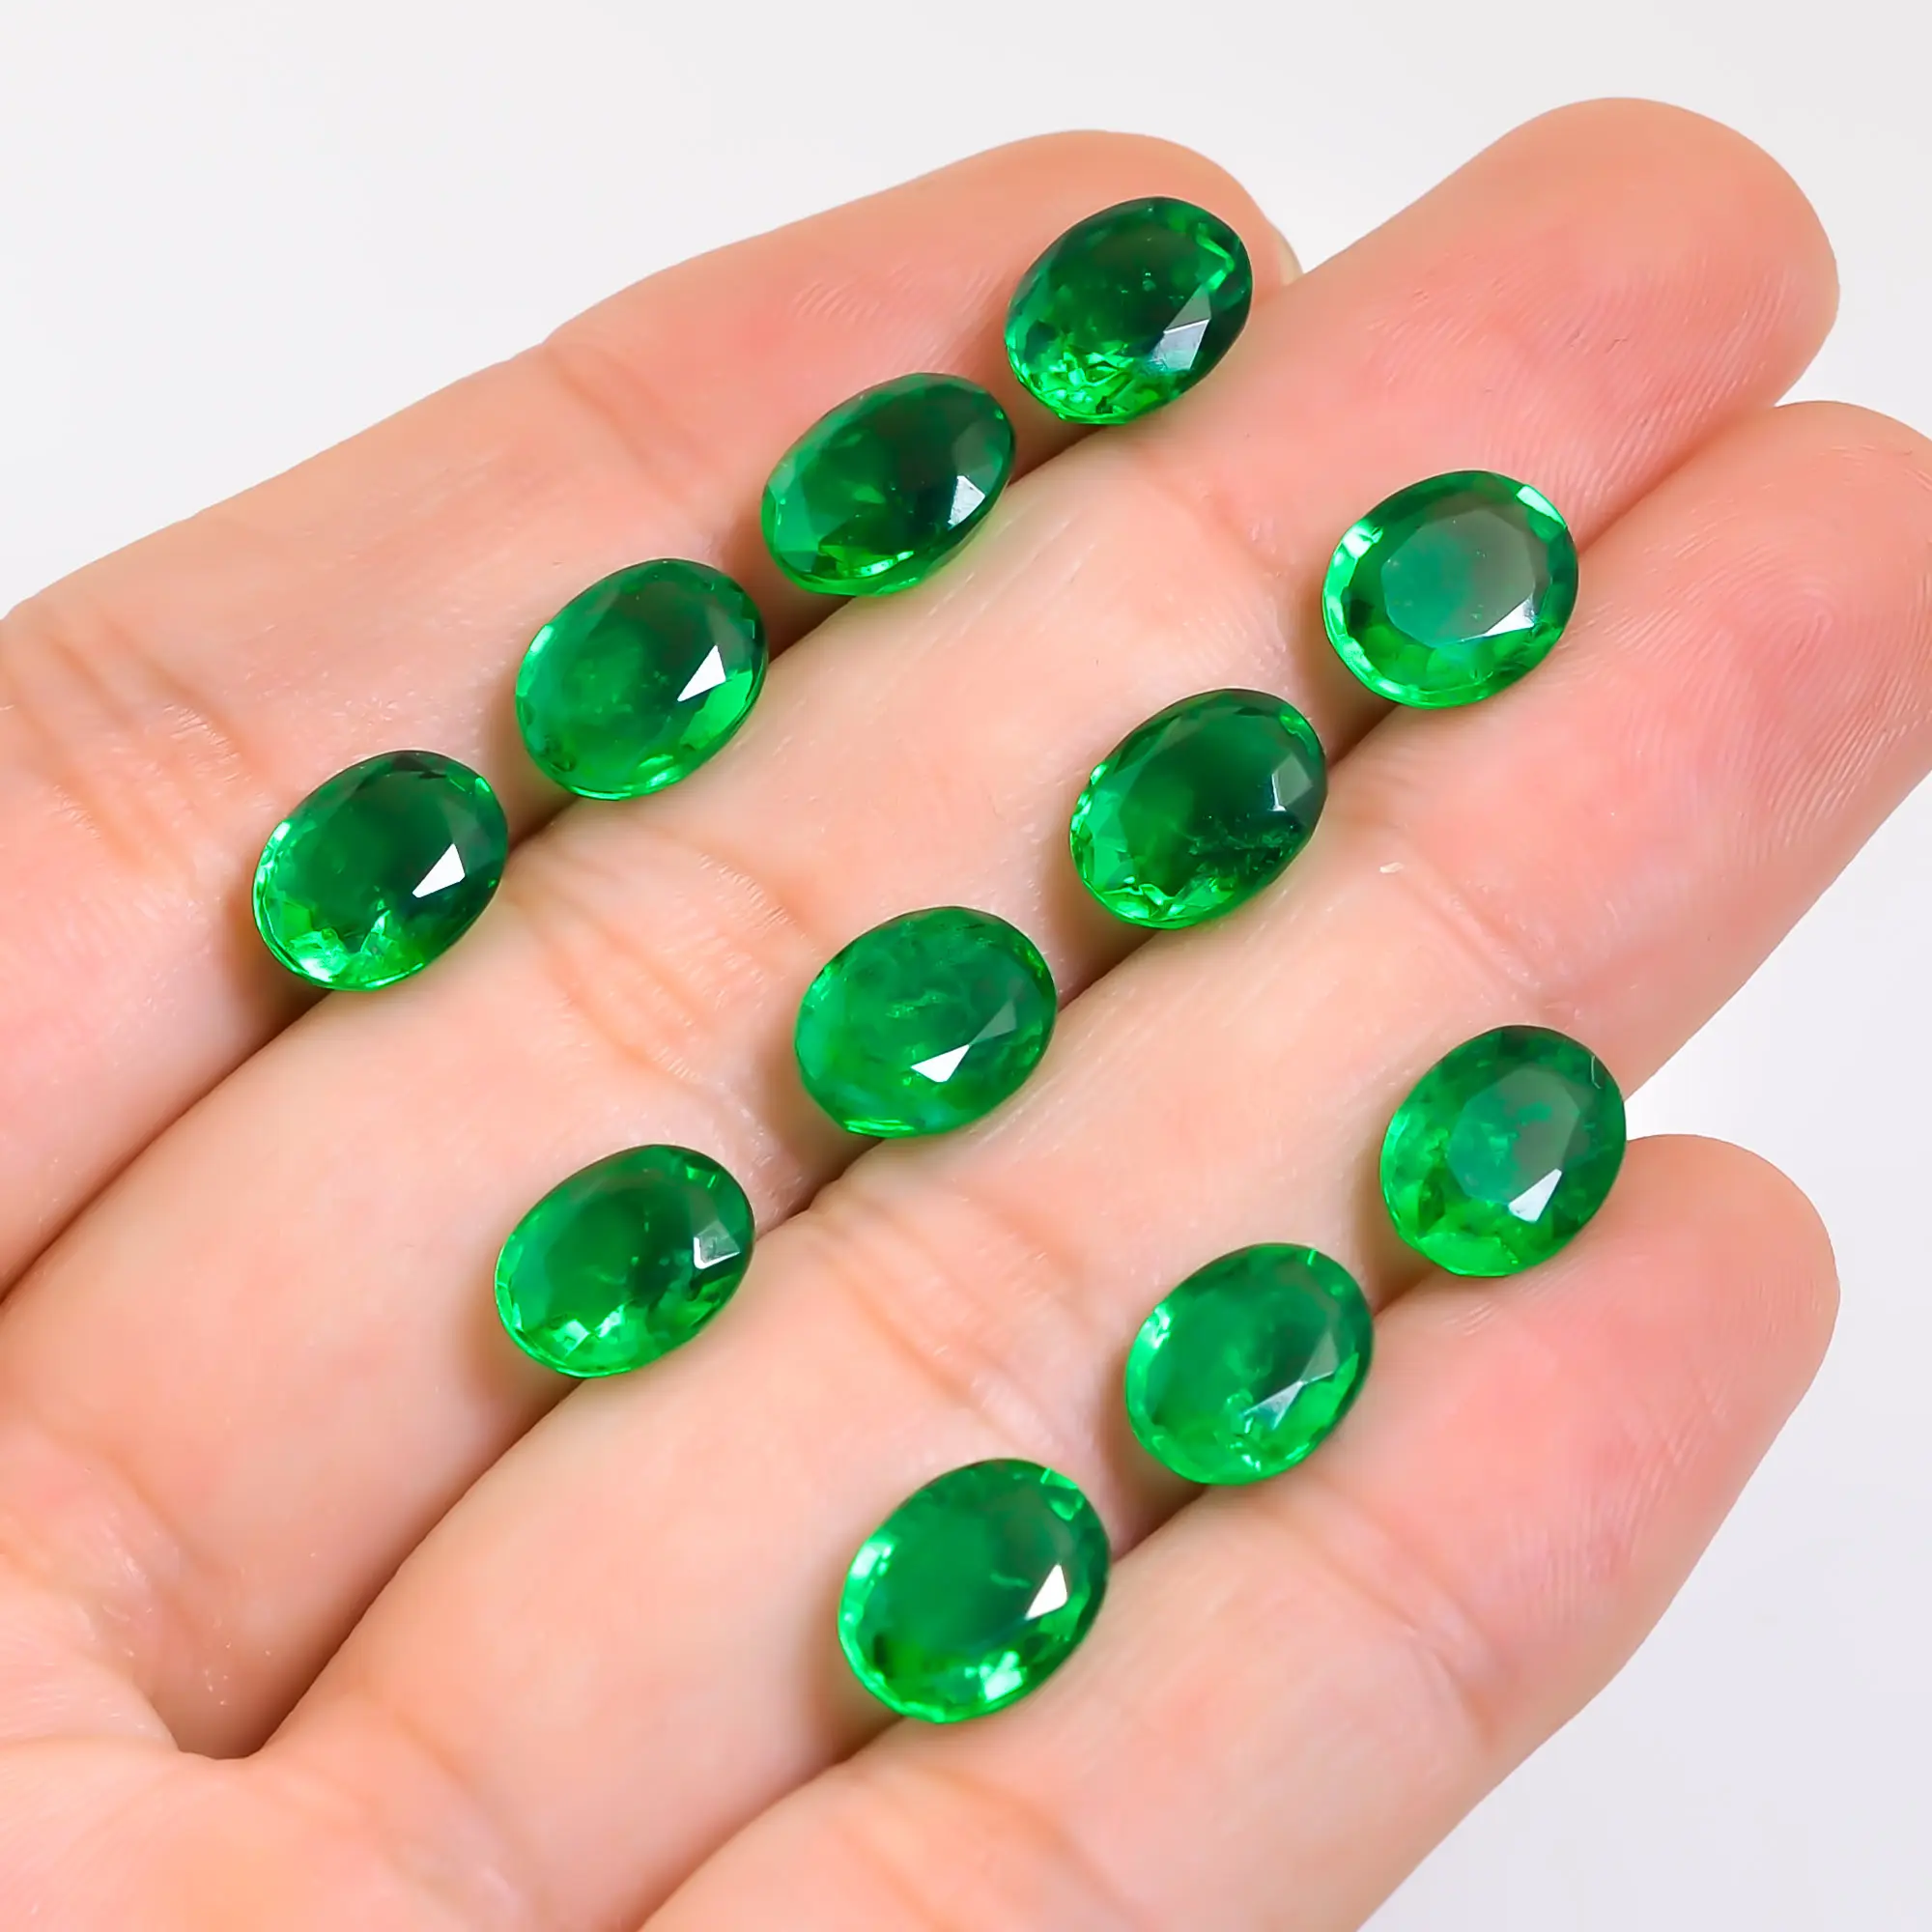 Tamanho pequeno solto pedra preciosa corte redondo esmeralda verde esmeralda natural preço por carat